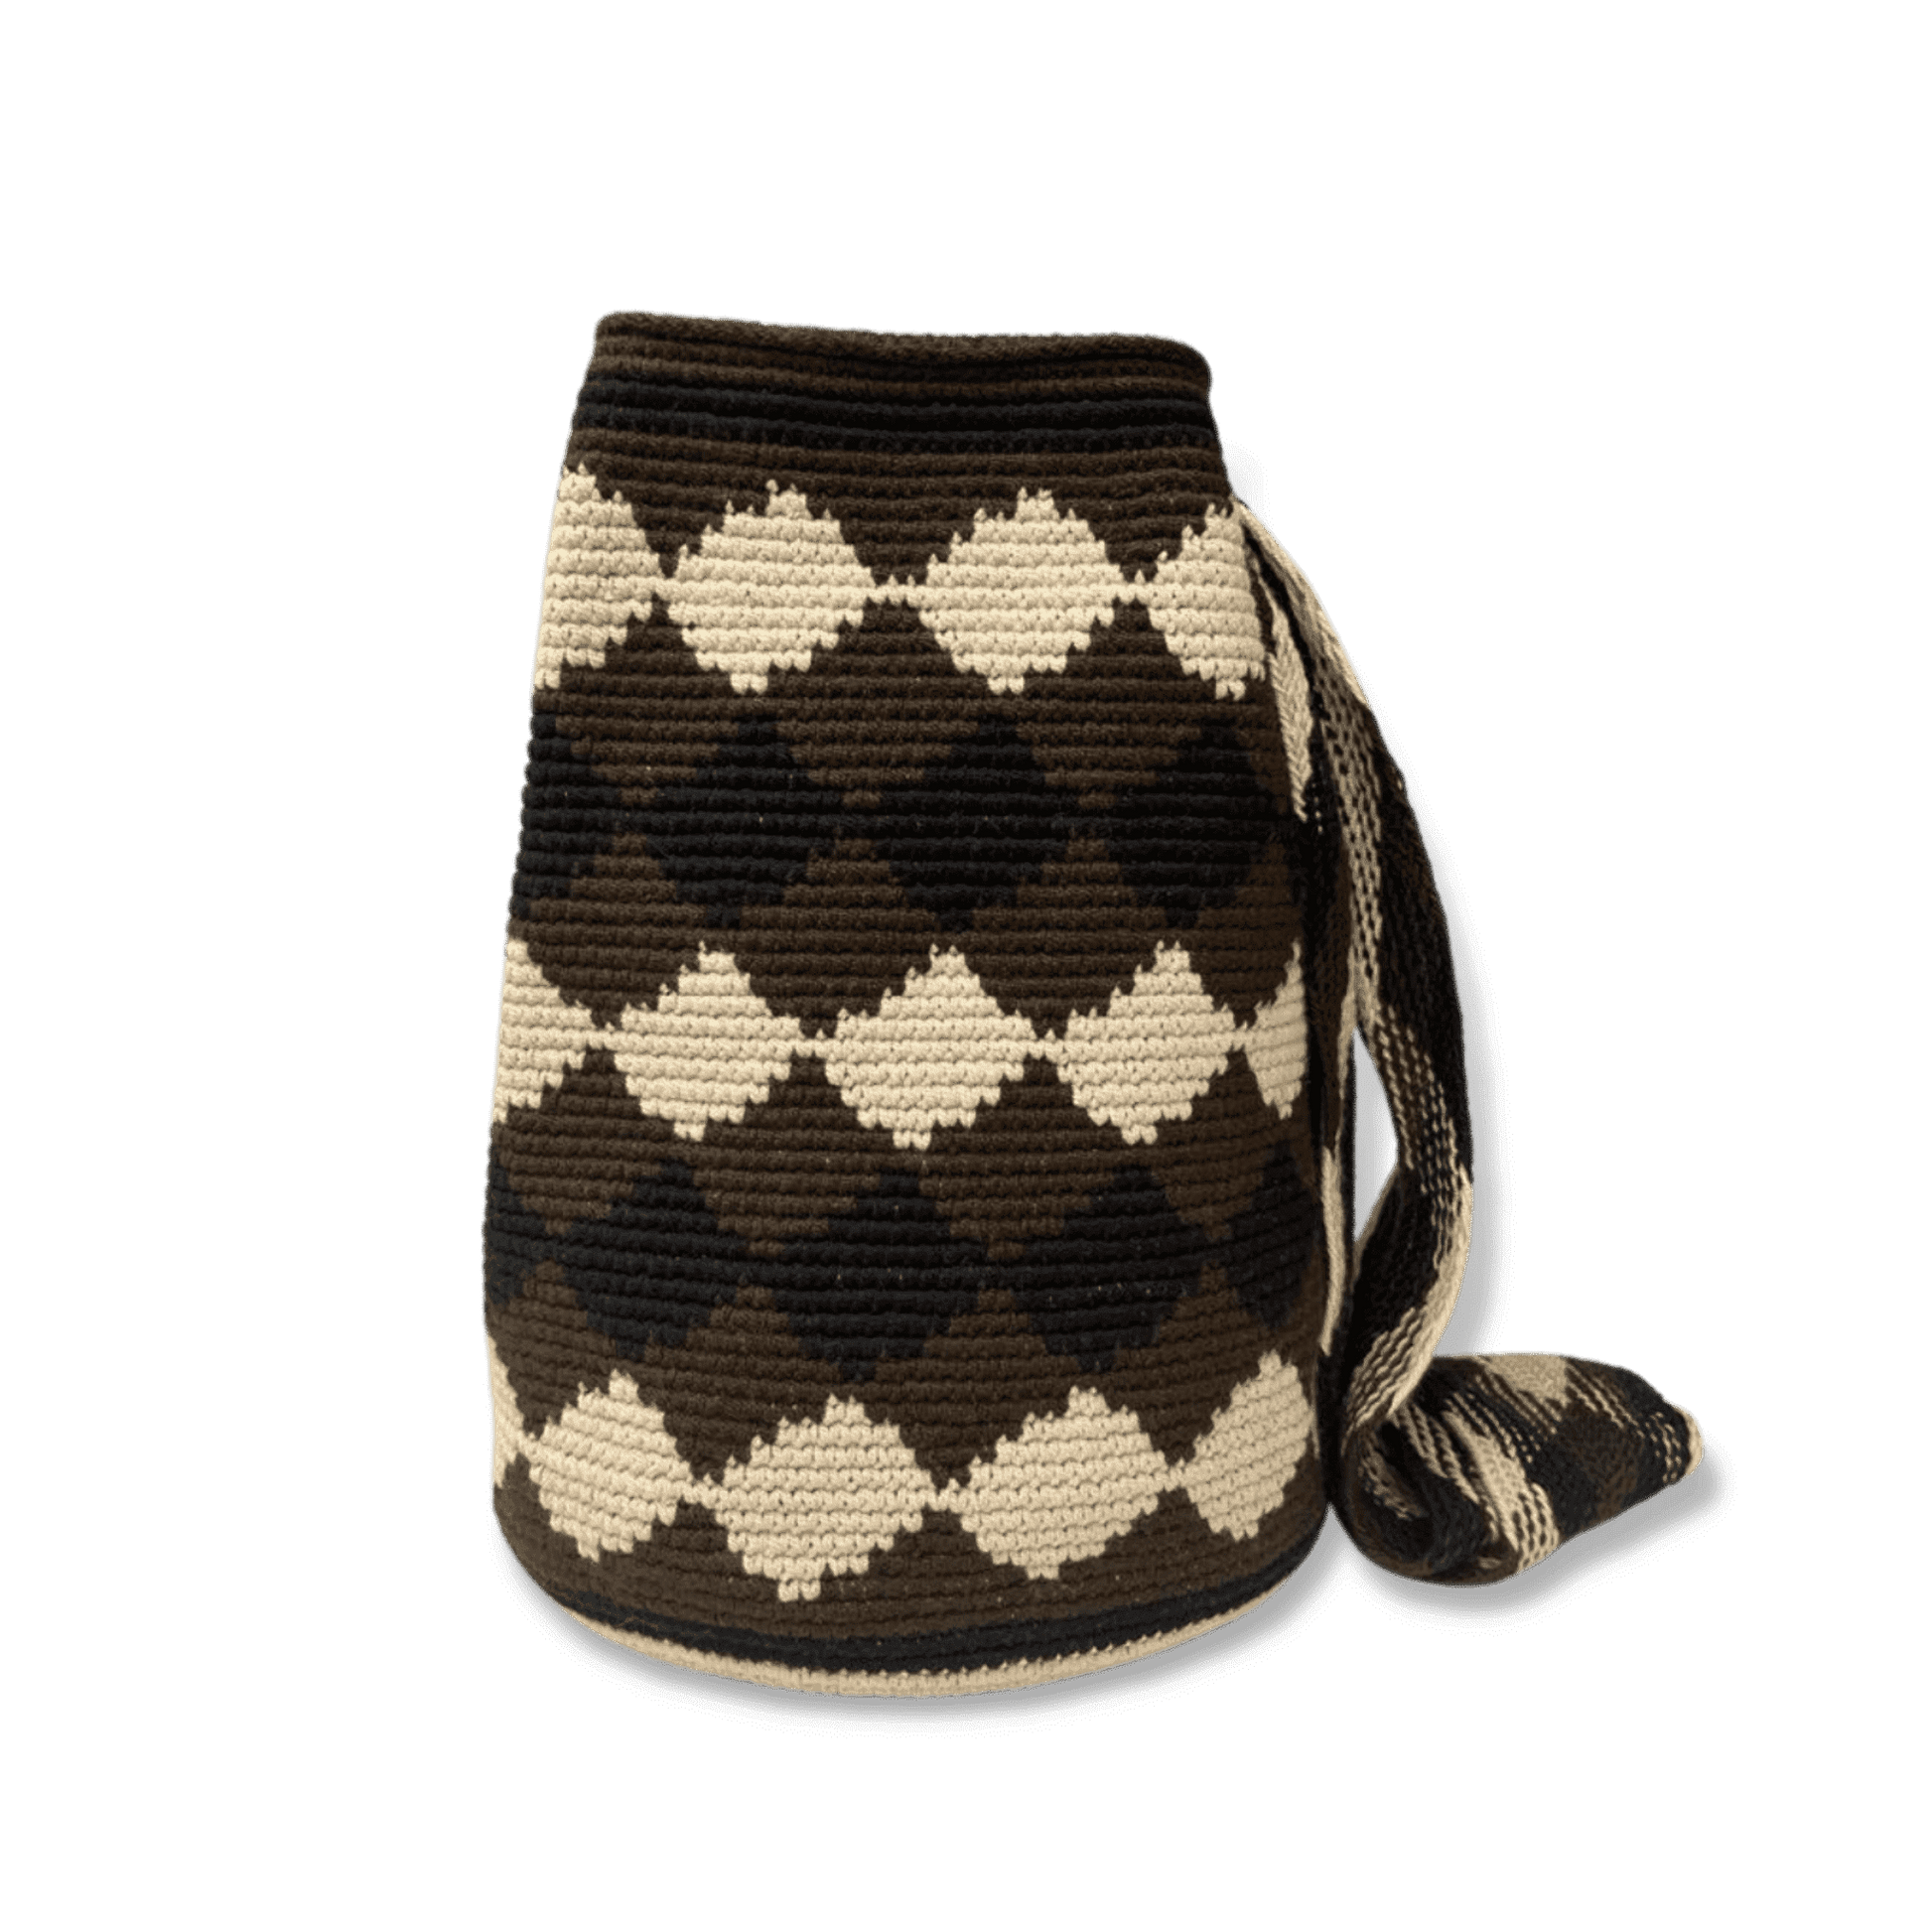 Mochila wayuu original para hombre tejido en rombos negro, cafe y beige